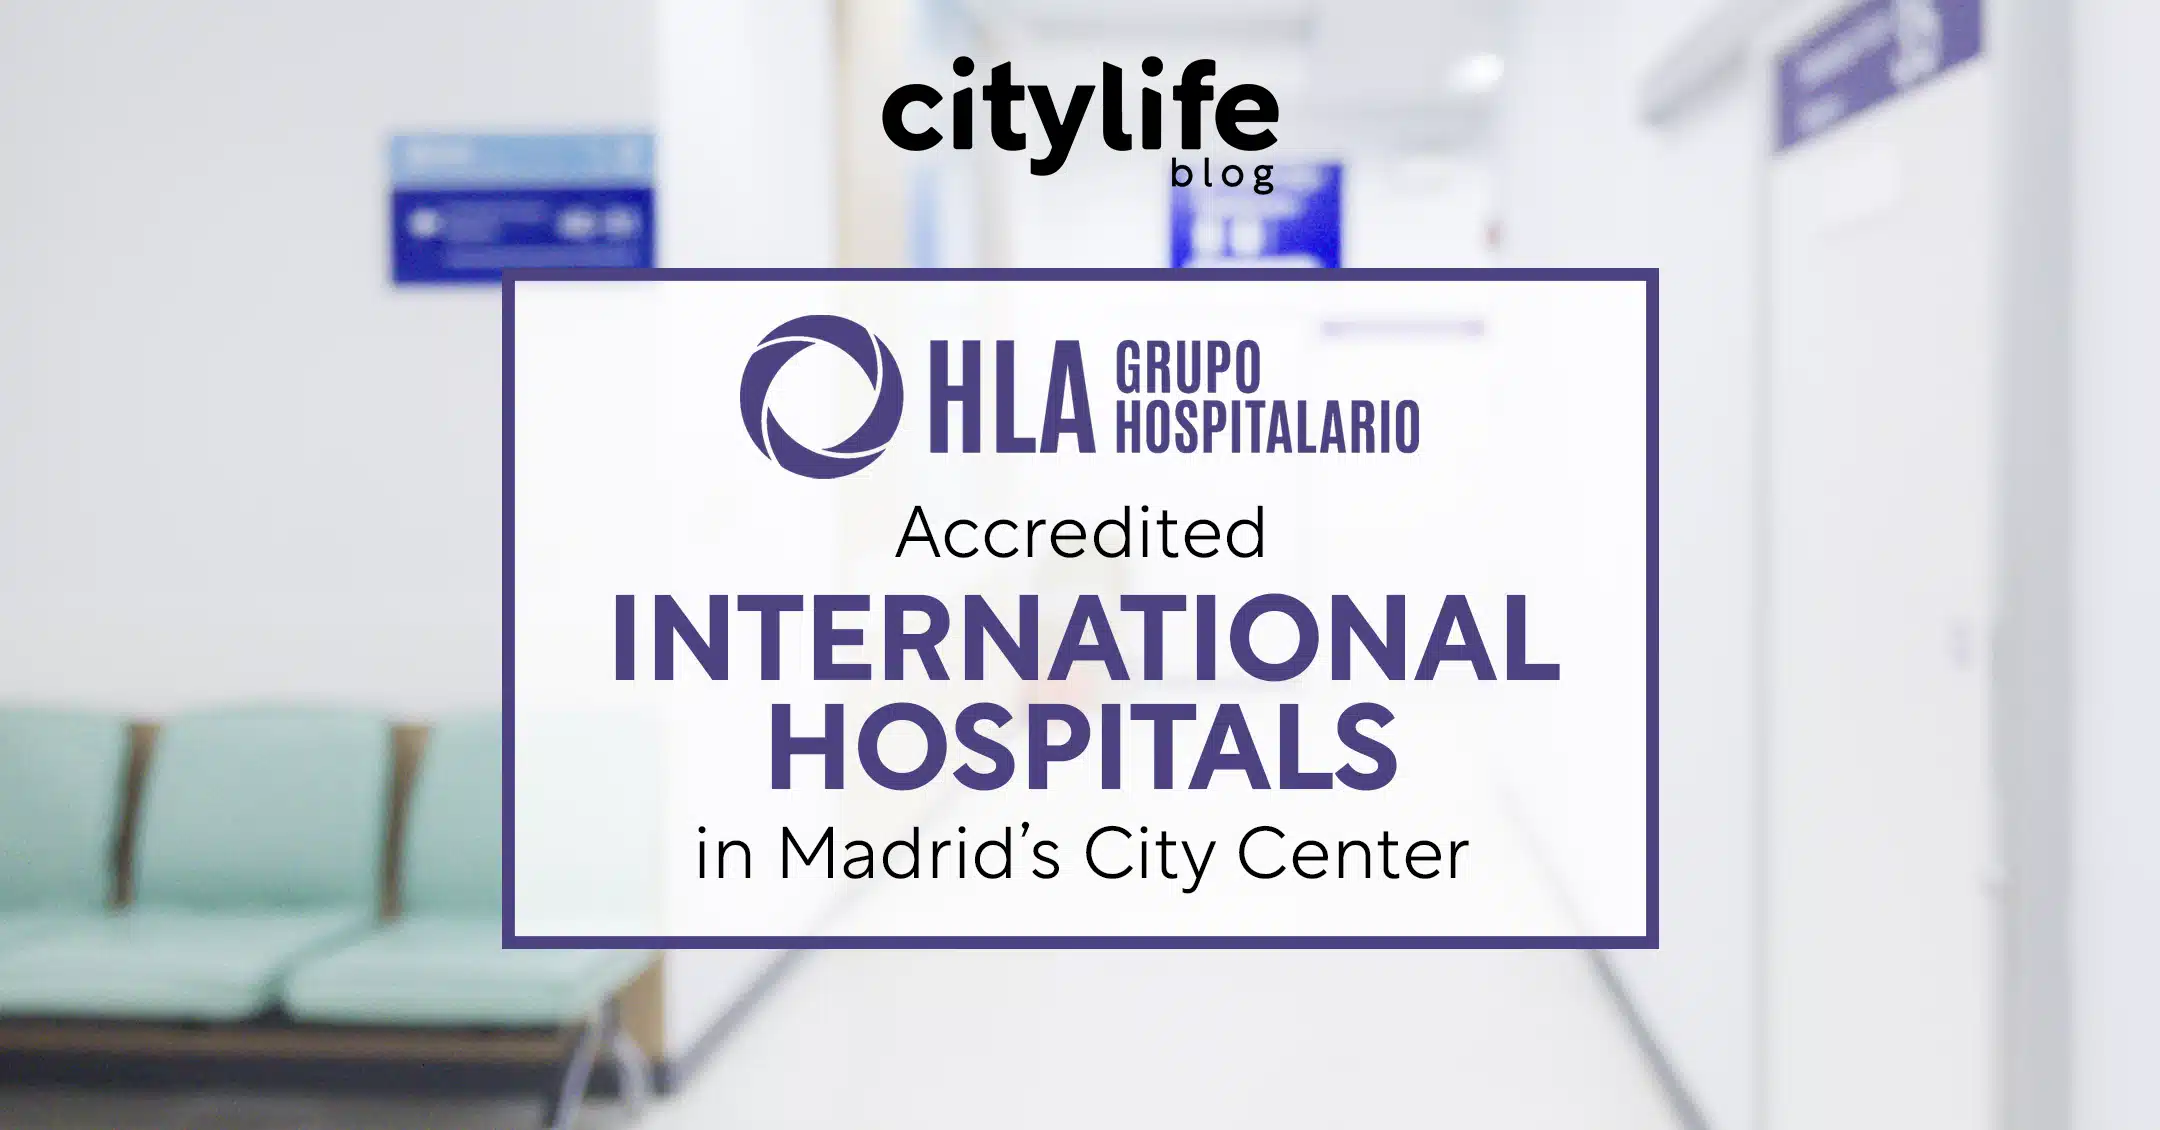 featured-image-hla-grupo-hospitalario-international-hospitals-citylife-madrid